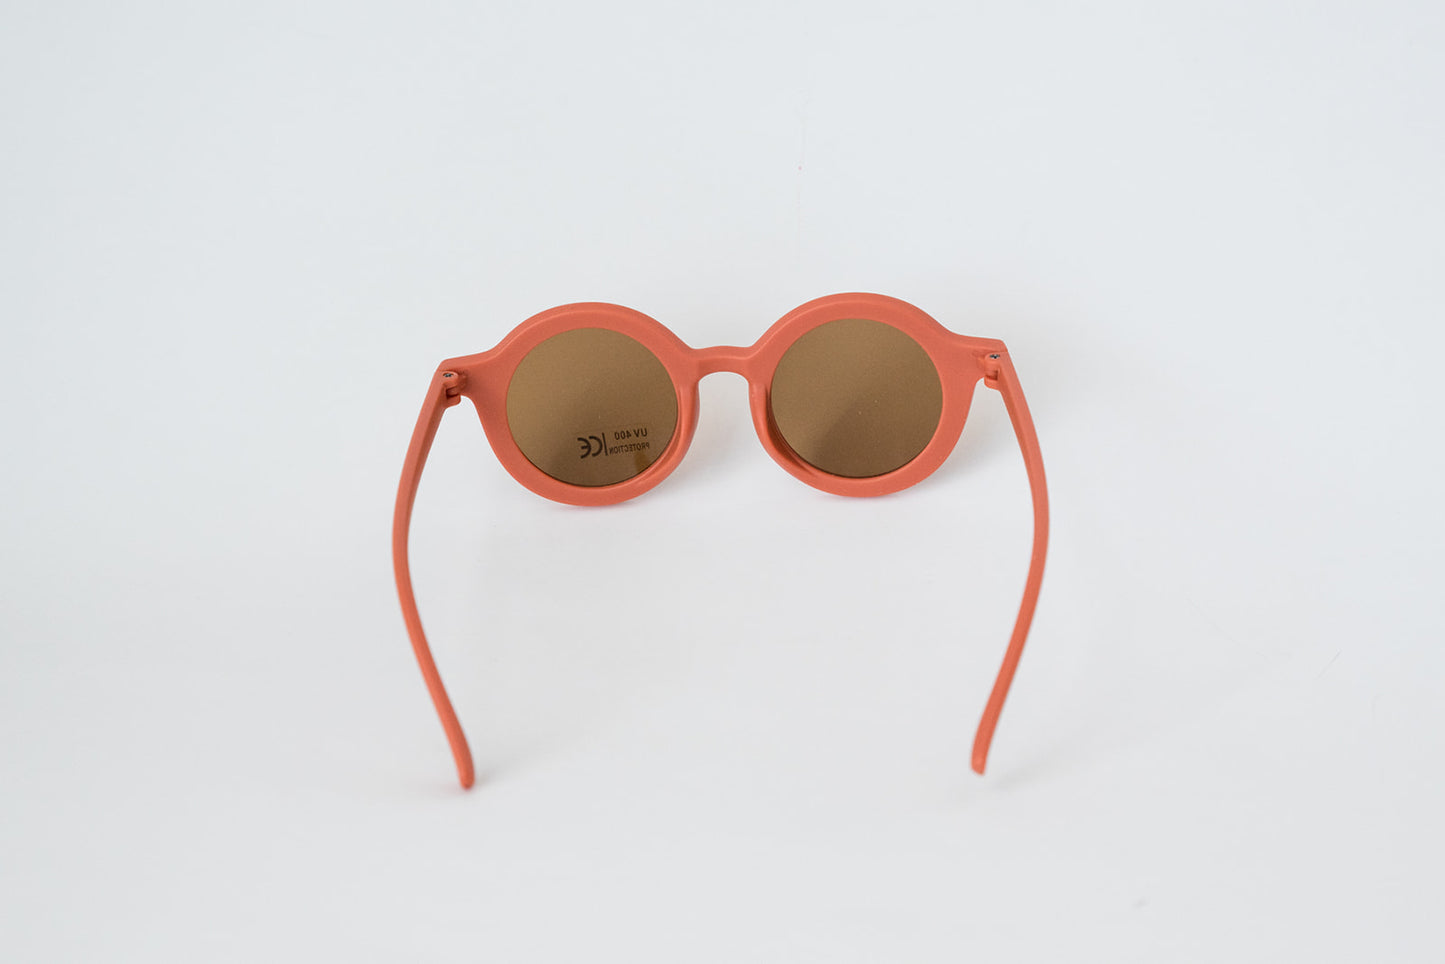 Toddler & Kid Retro Sunglasses - Coral Orange